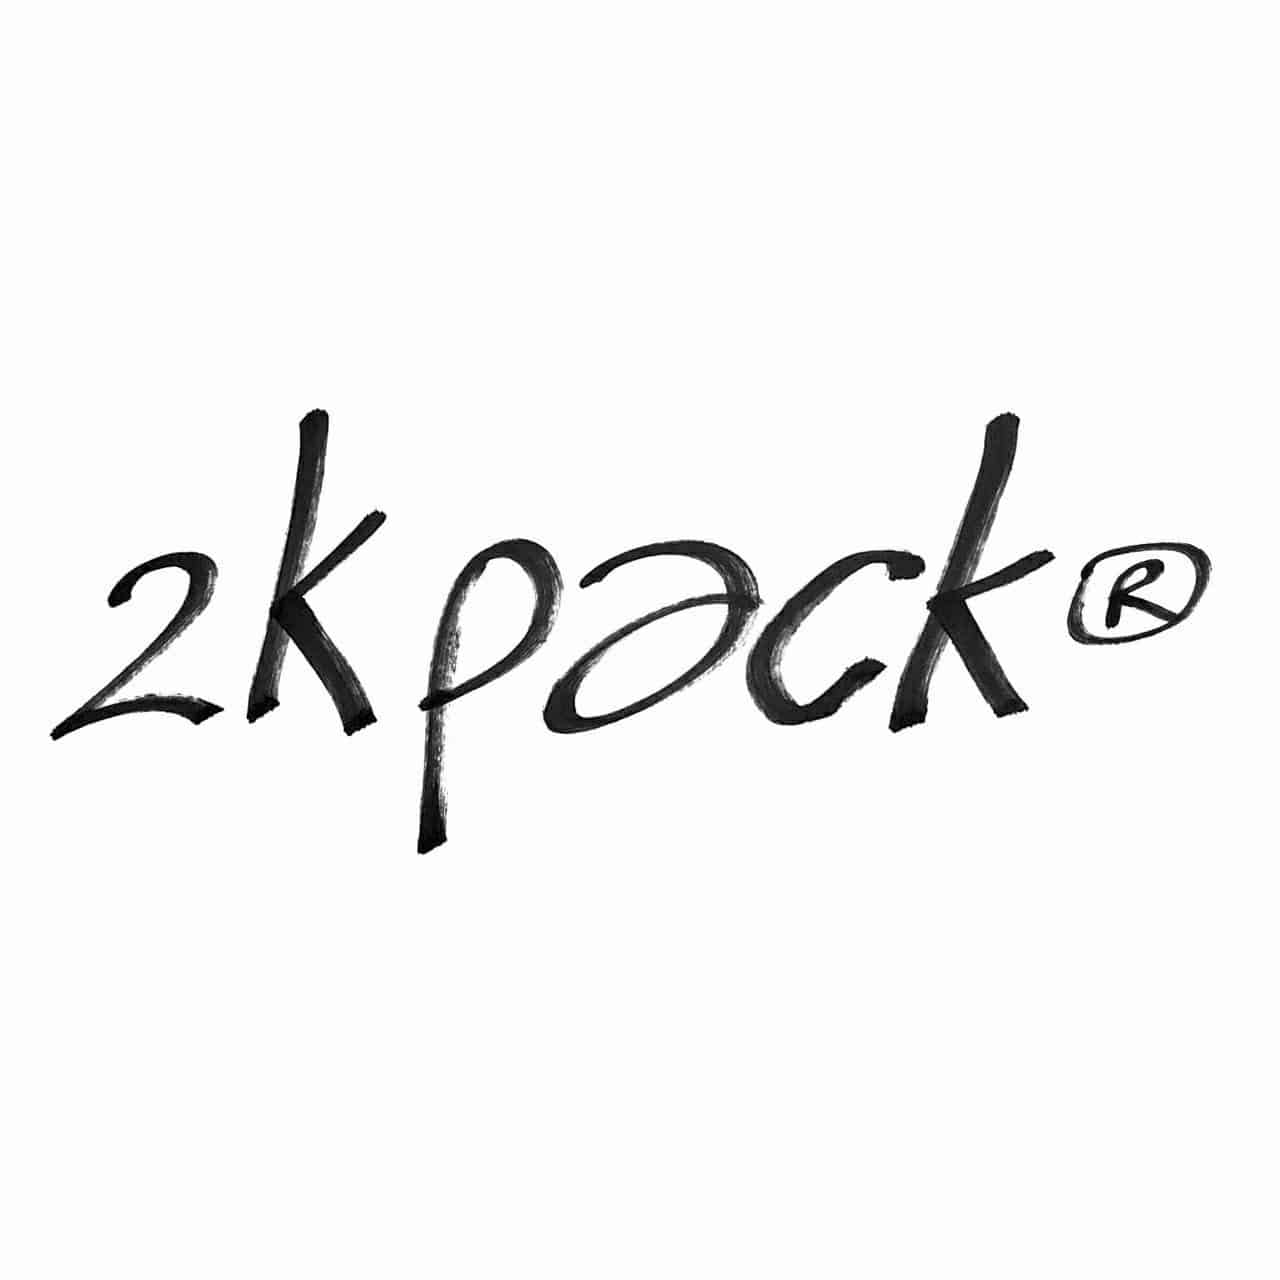 enteernal - 2k pack